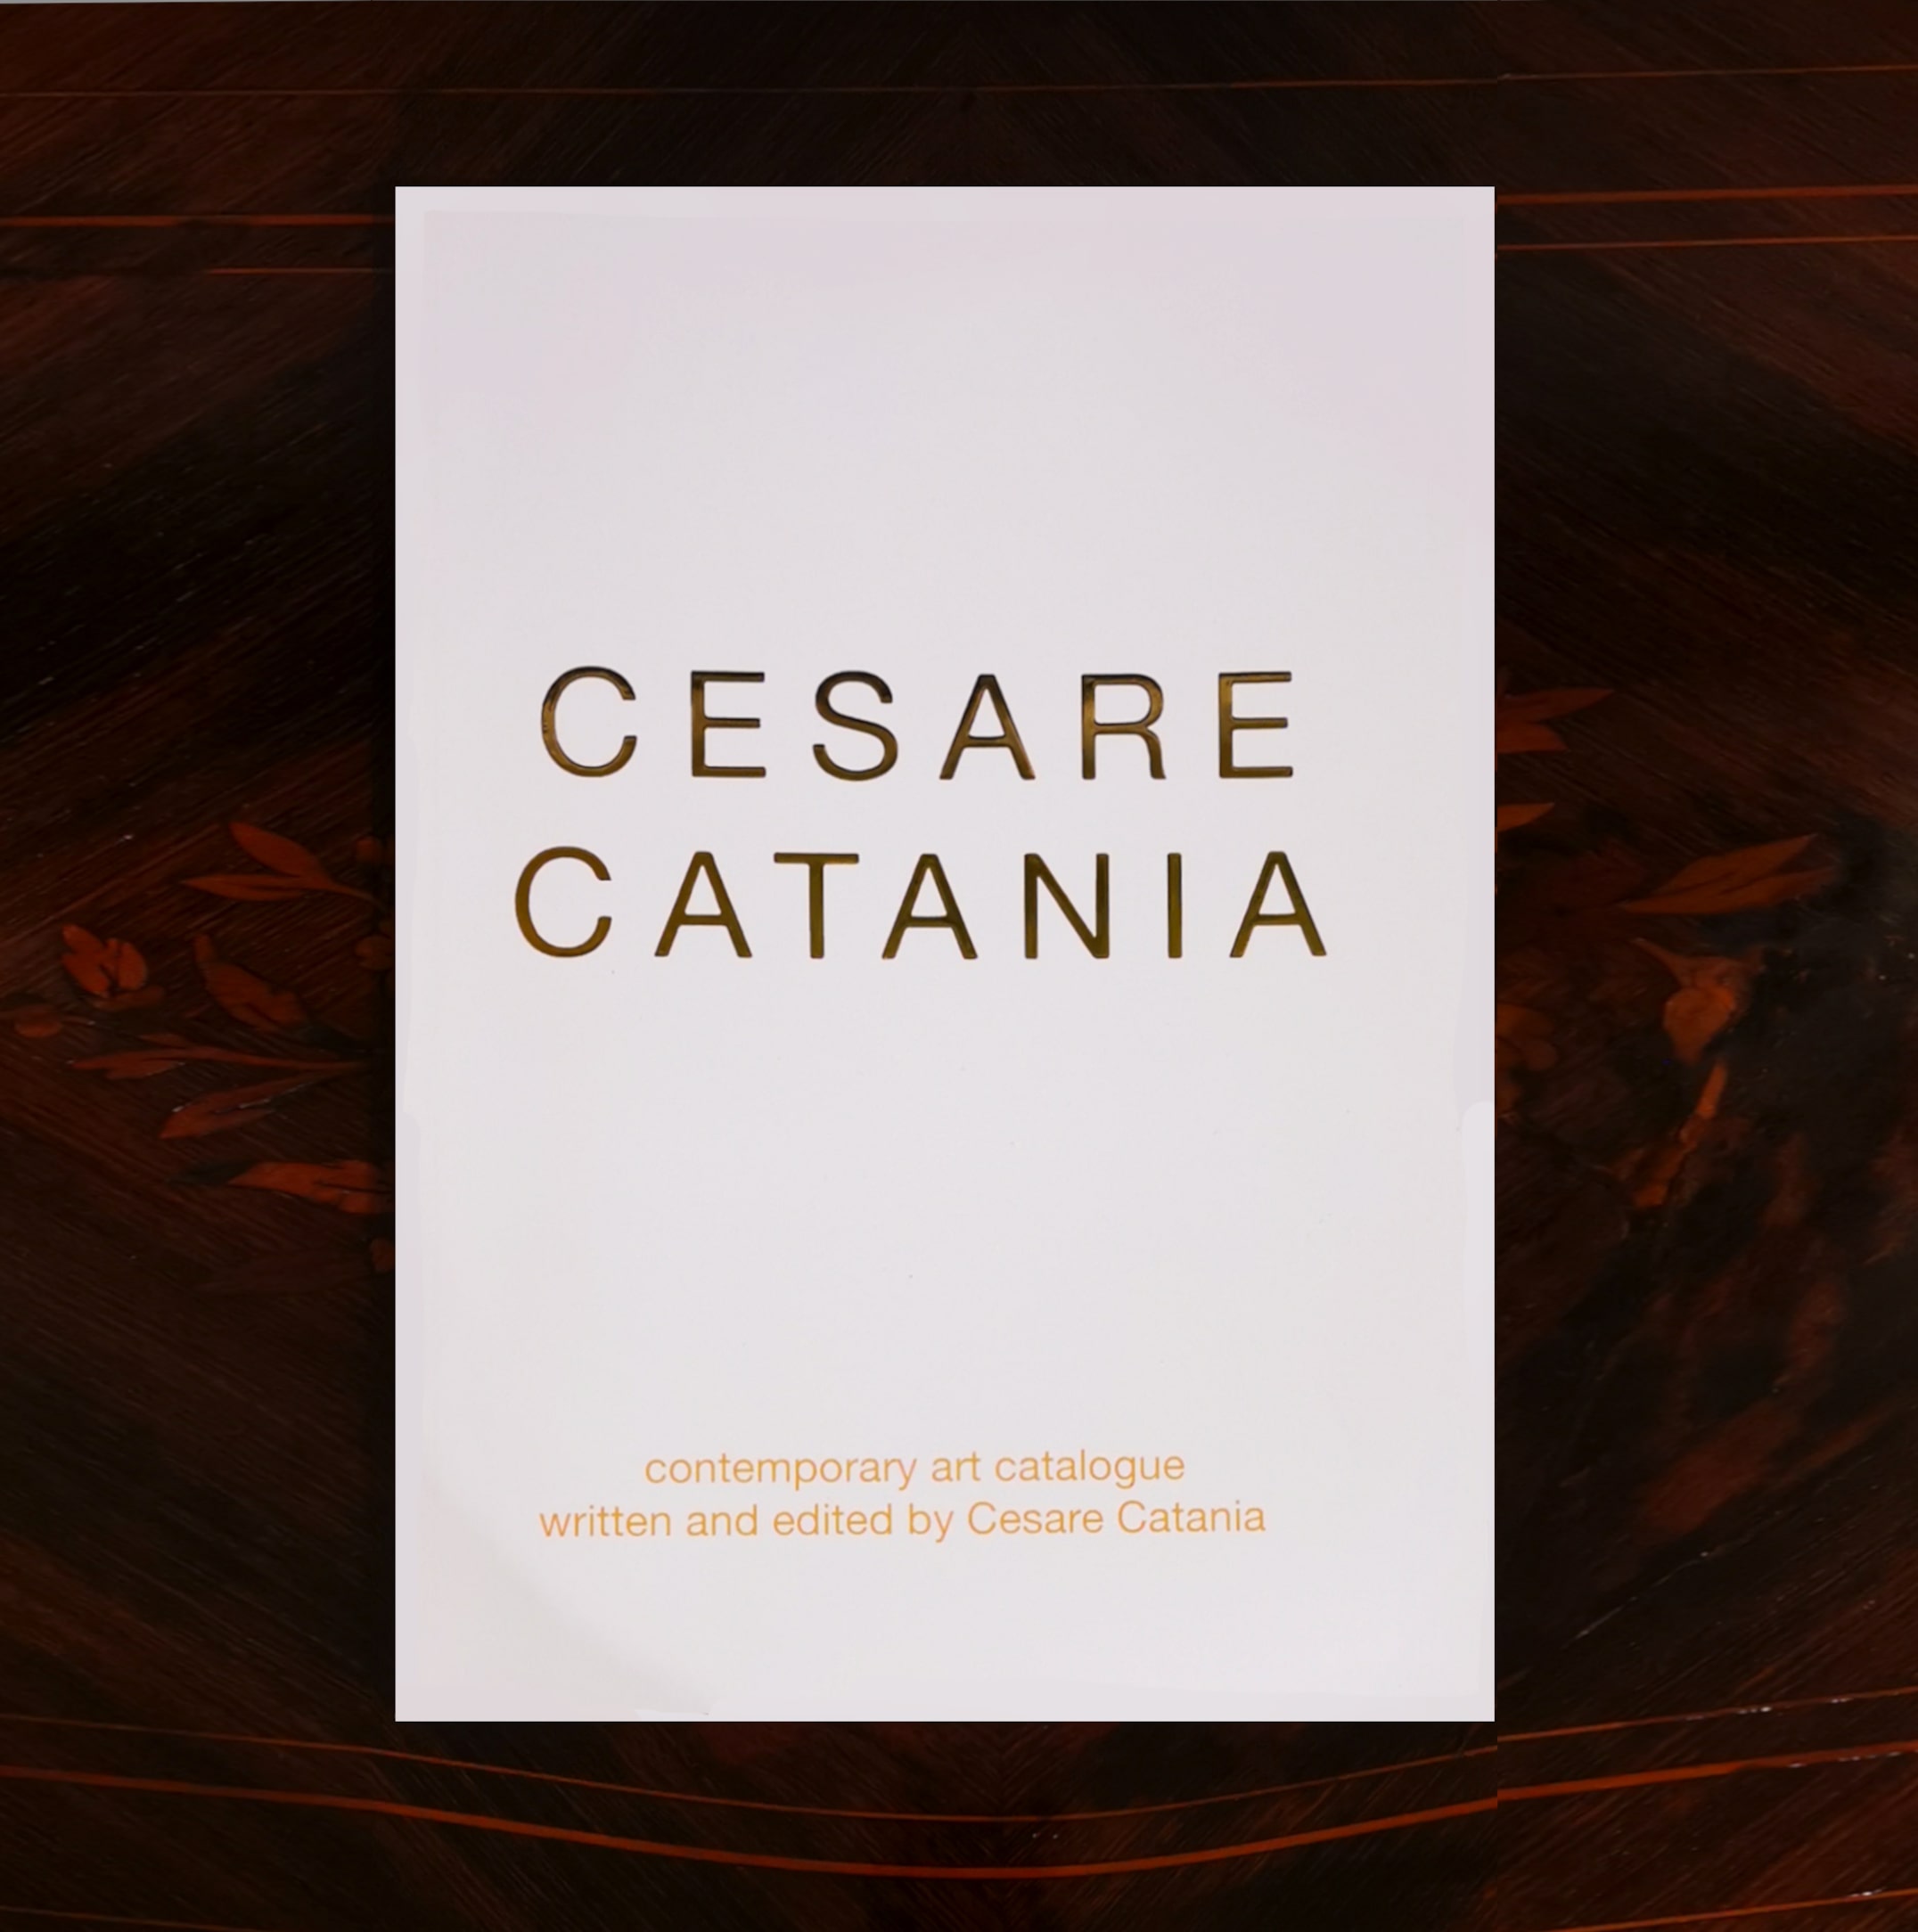 包含切萨雷·卡塔尼亚作品并经作者签名的当代艺术书